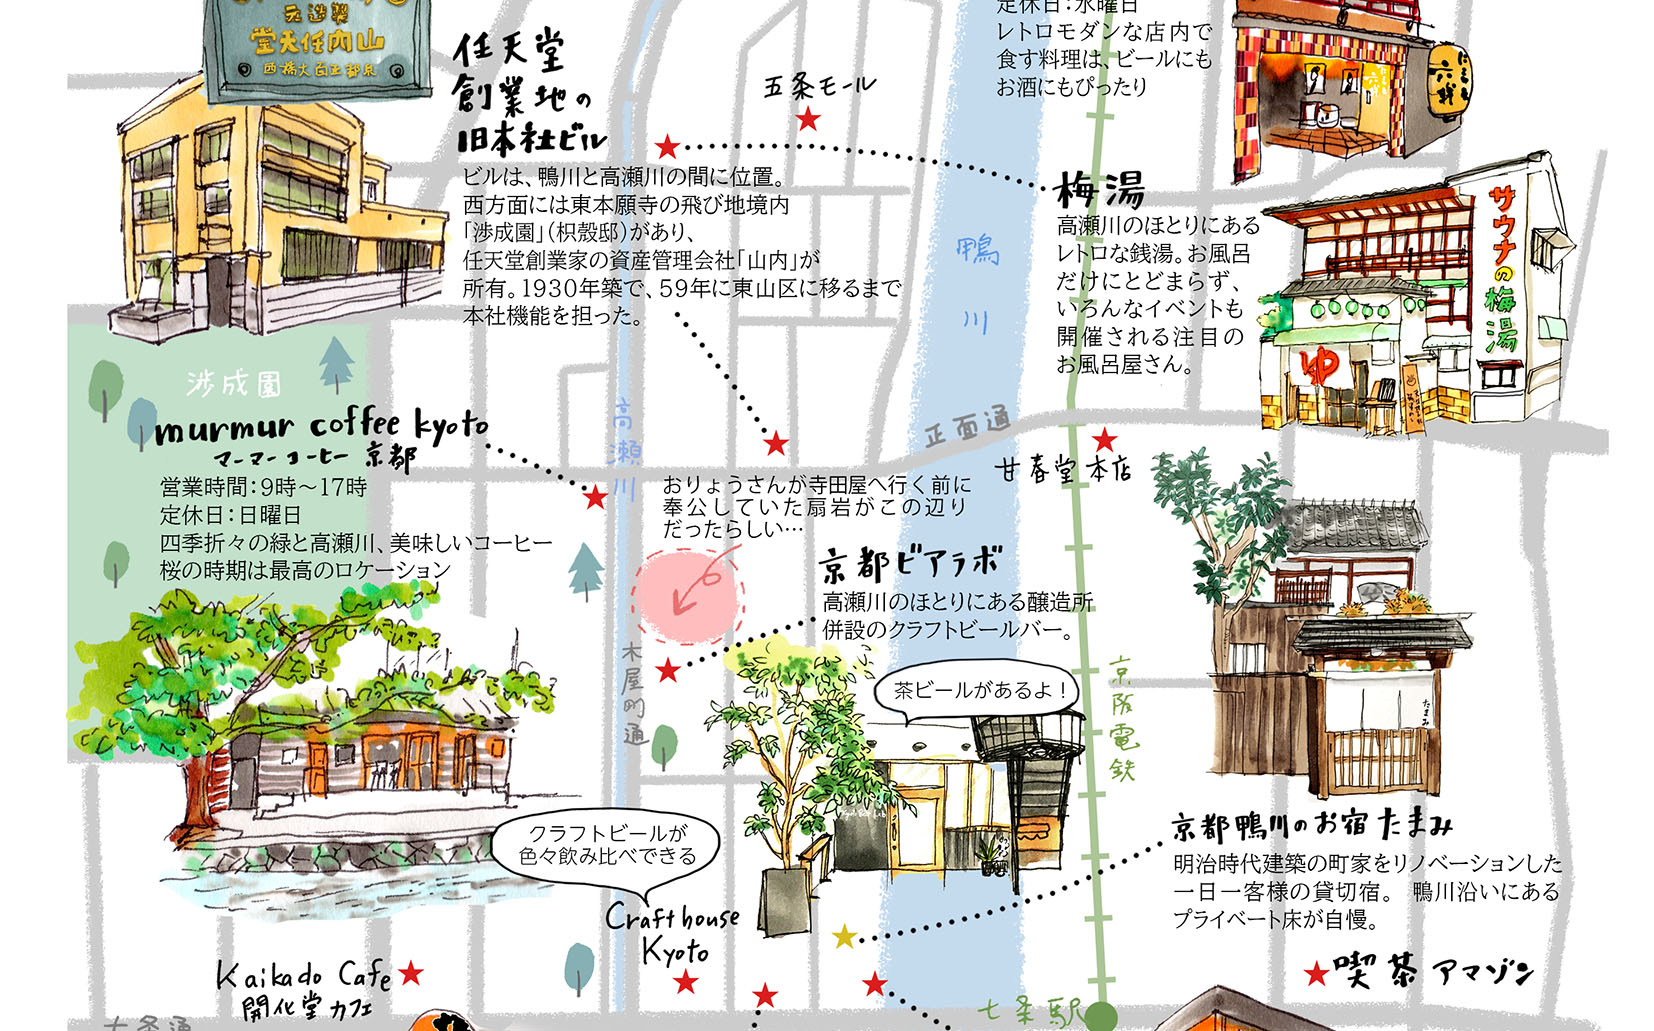 たまみ様_お宿周辺散策マップ_菊浜学区